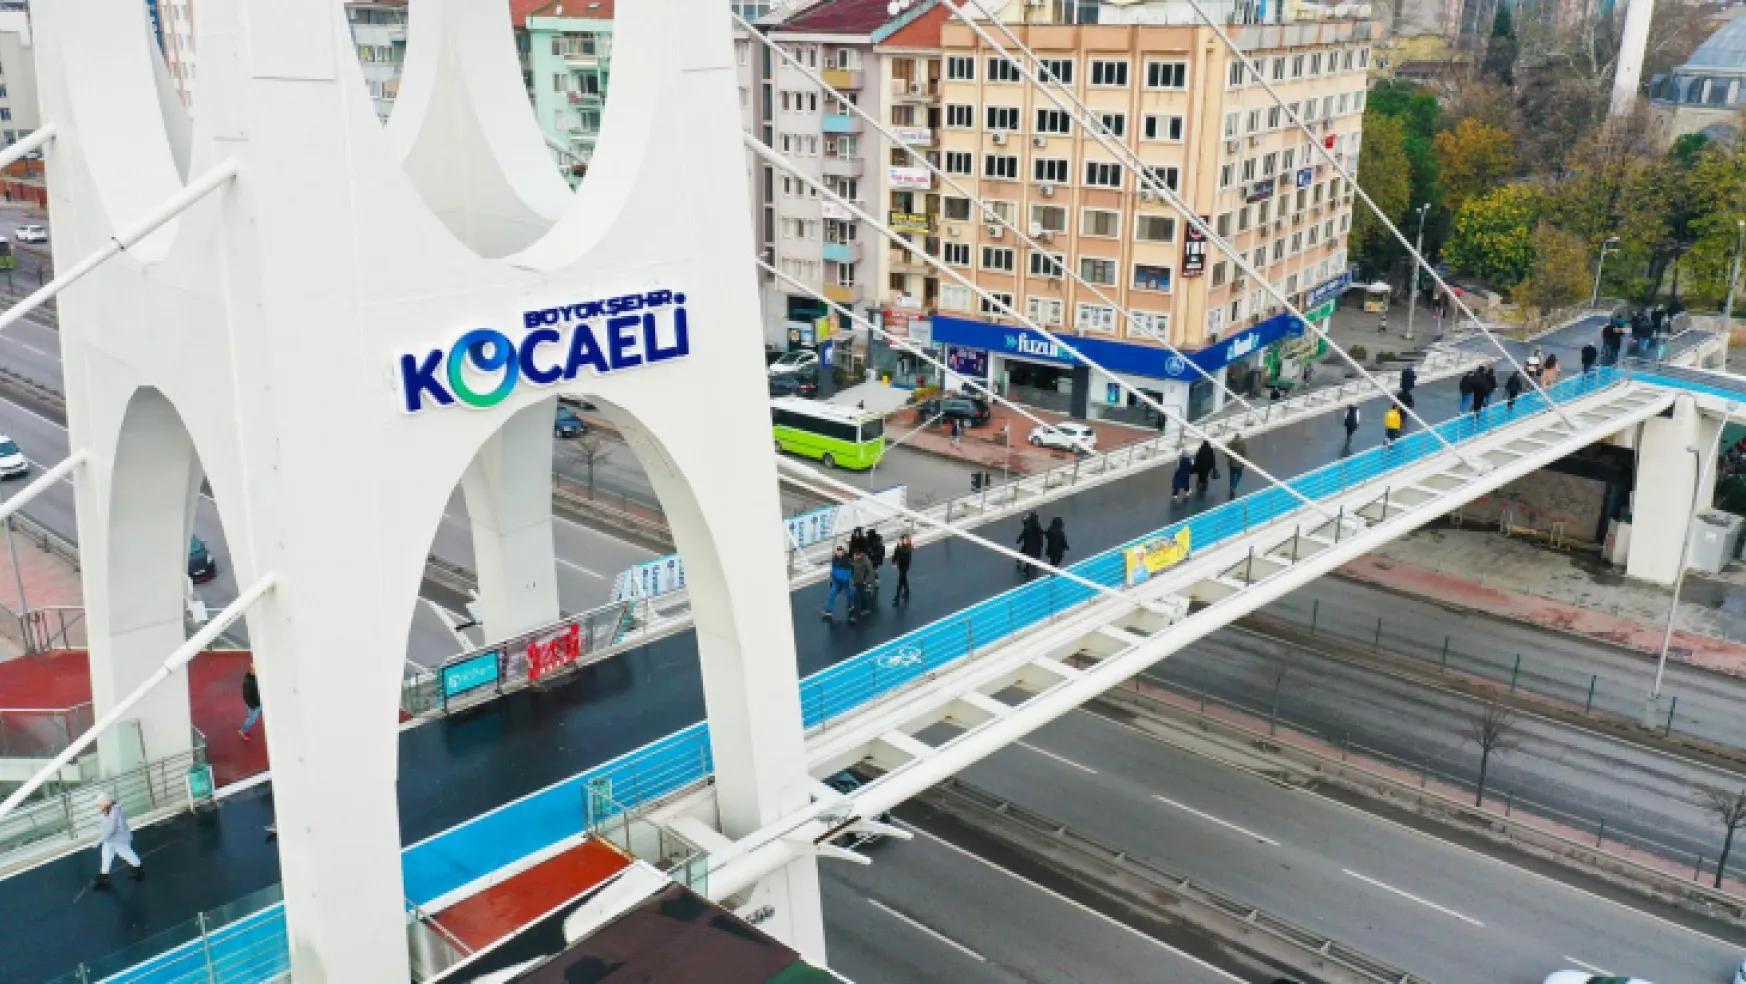 Kocaeli'nin markası köprülere işleniyor